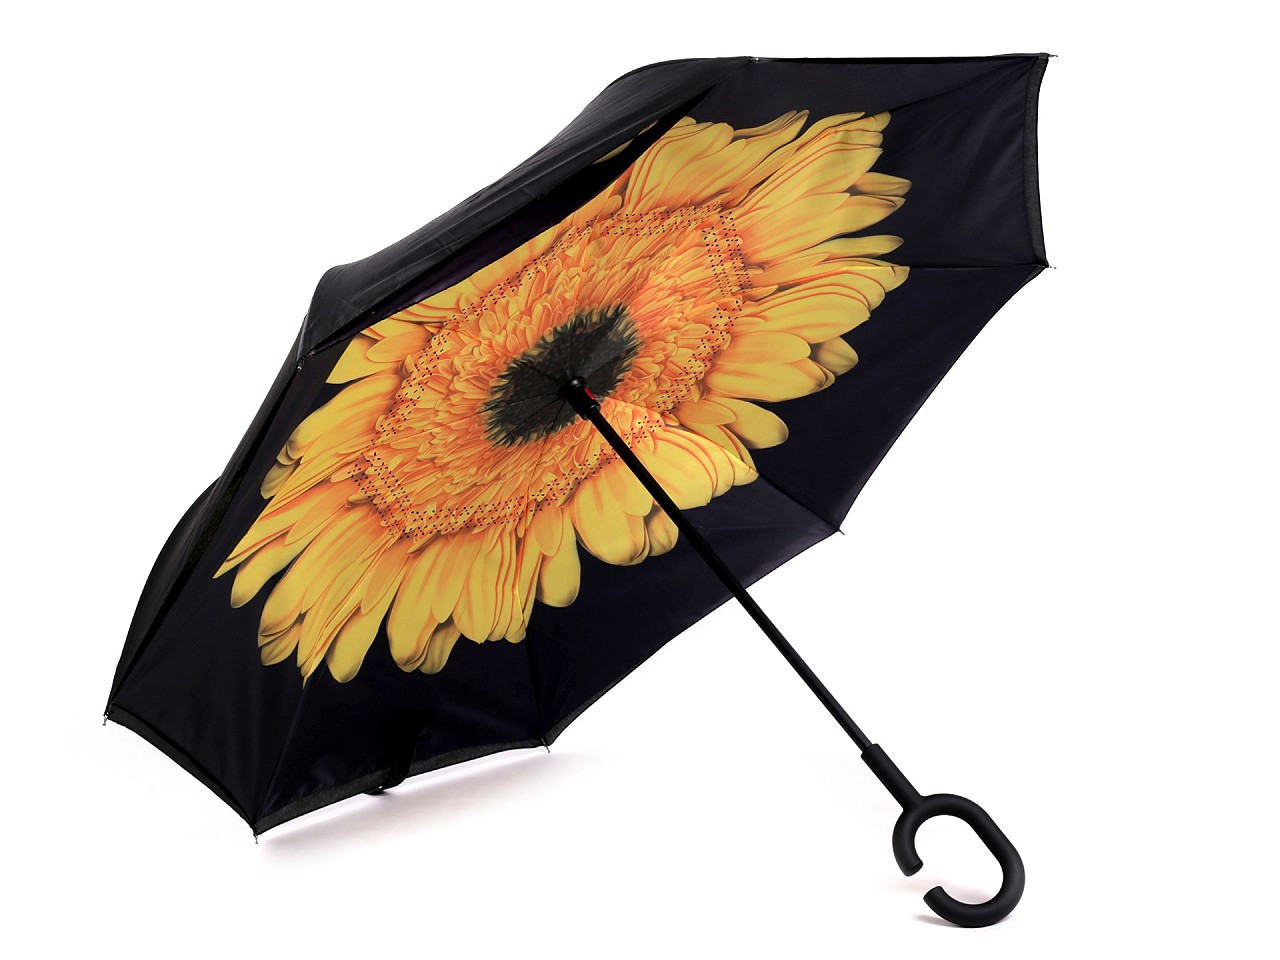 Obrácený deštník dvouvrstvý, barva 5 oranžovožlutá slunečnice